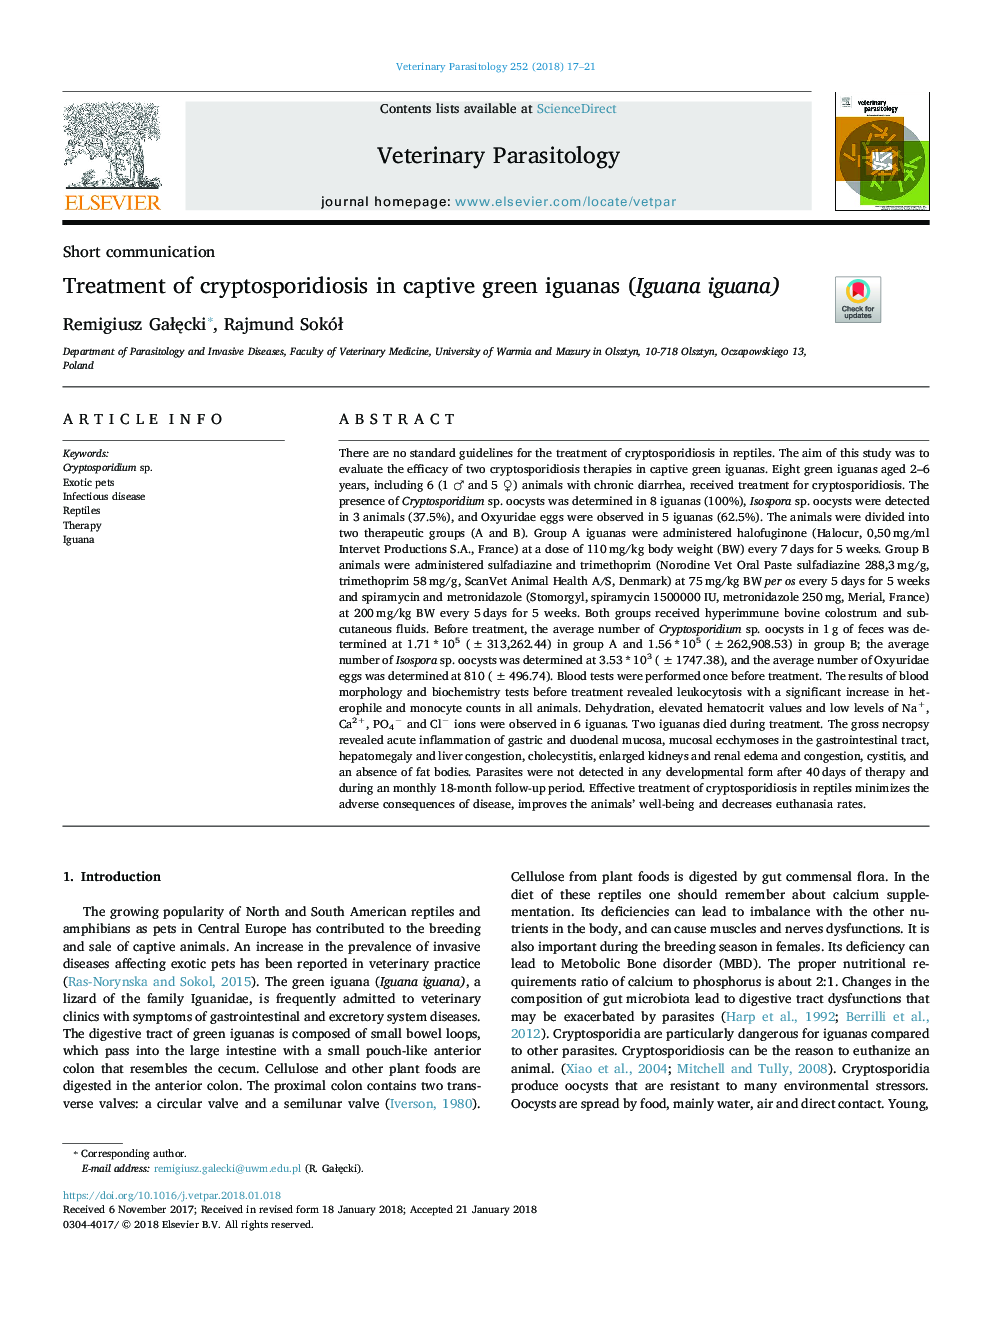 Treatment of cryptosporidiosis in captive green iguanas (Iguana iguana)